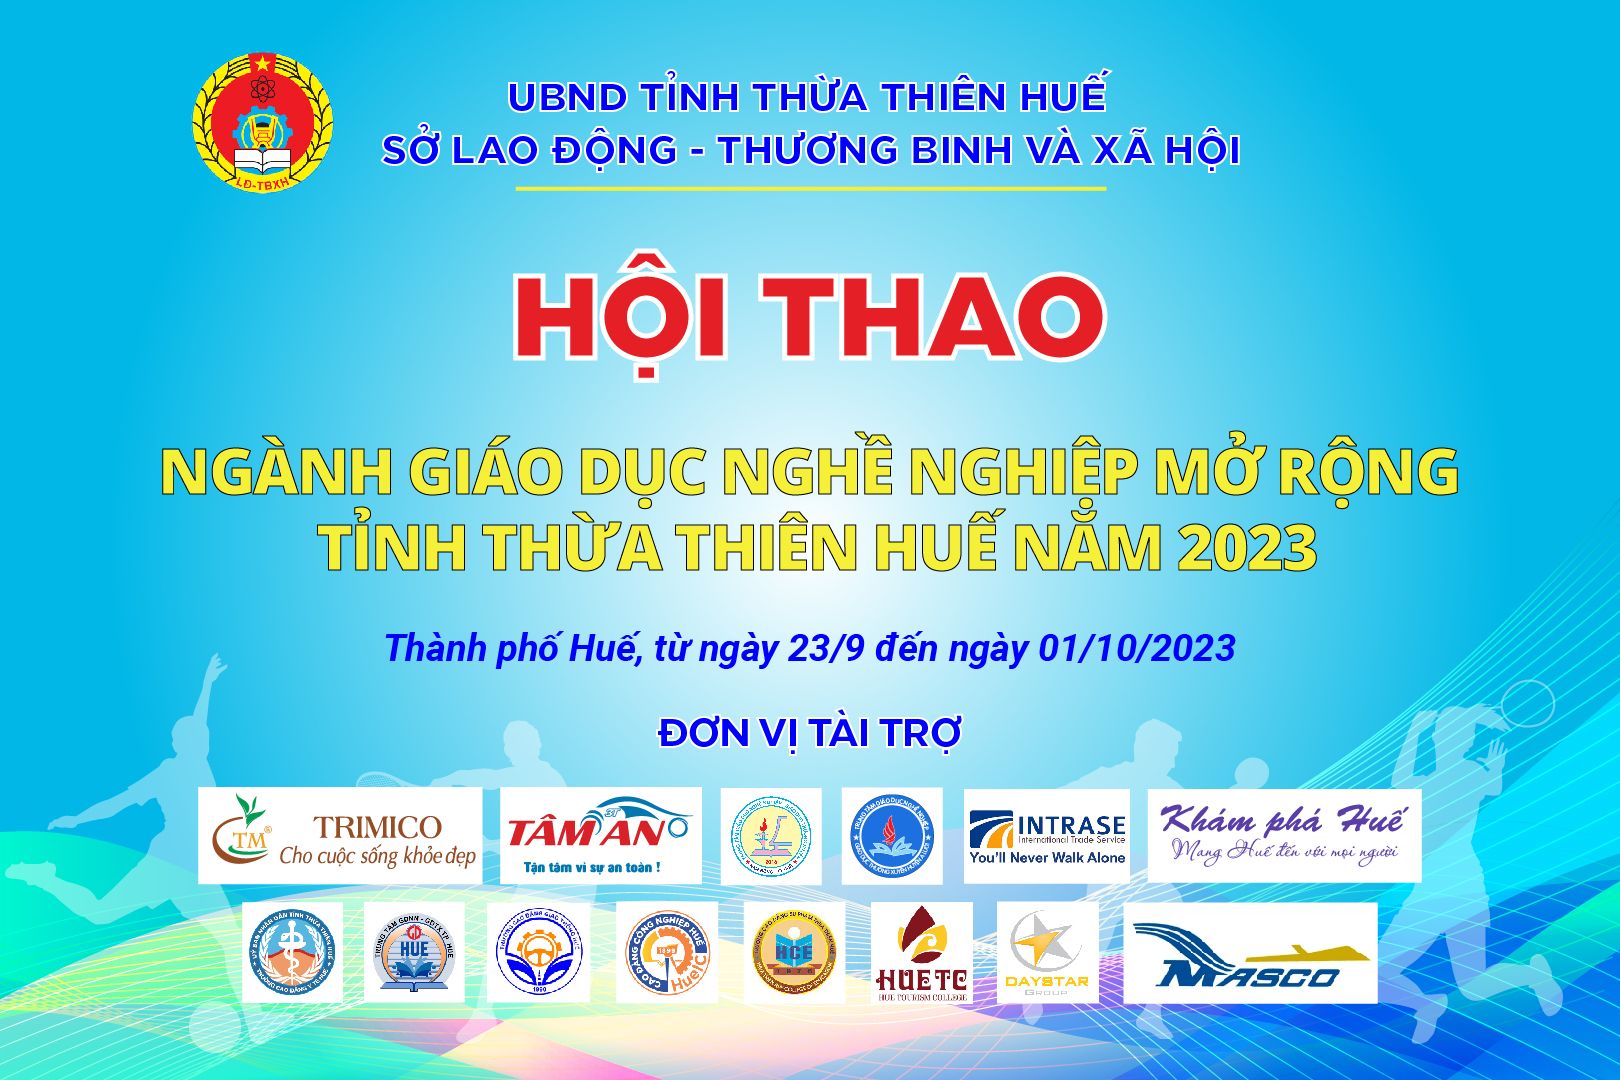 Hội thao ngành giáo dục nghề nghiệp mở rộng tỉnh Thừa Thiên Huế năm 2023 sẽ diễn ra từ ngày 23/9 đến 01/10/2023